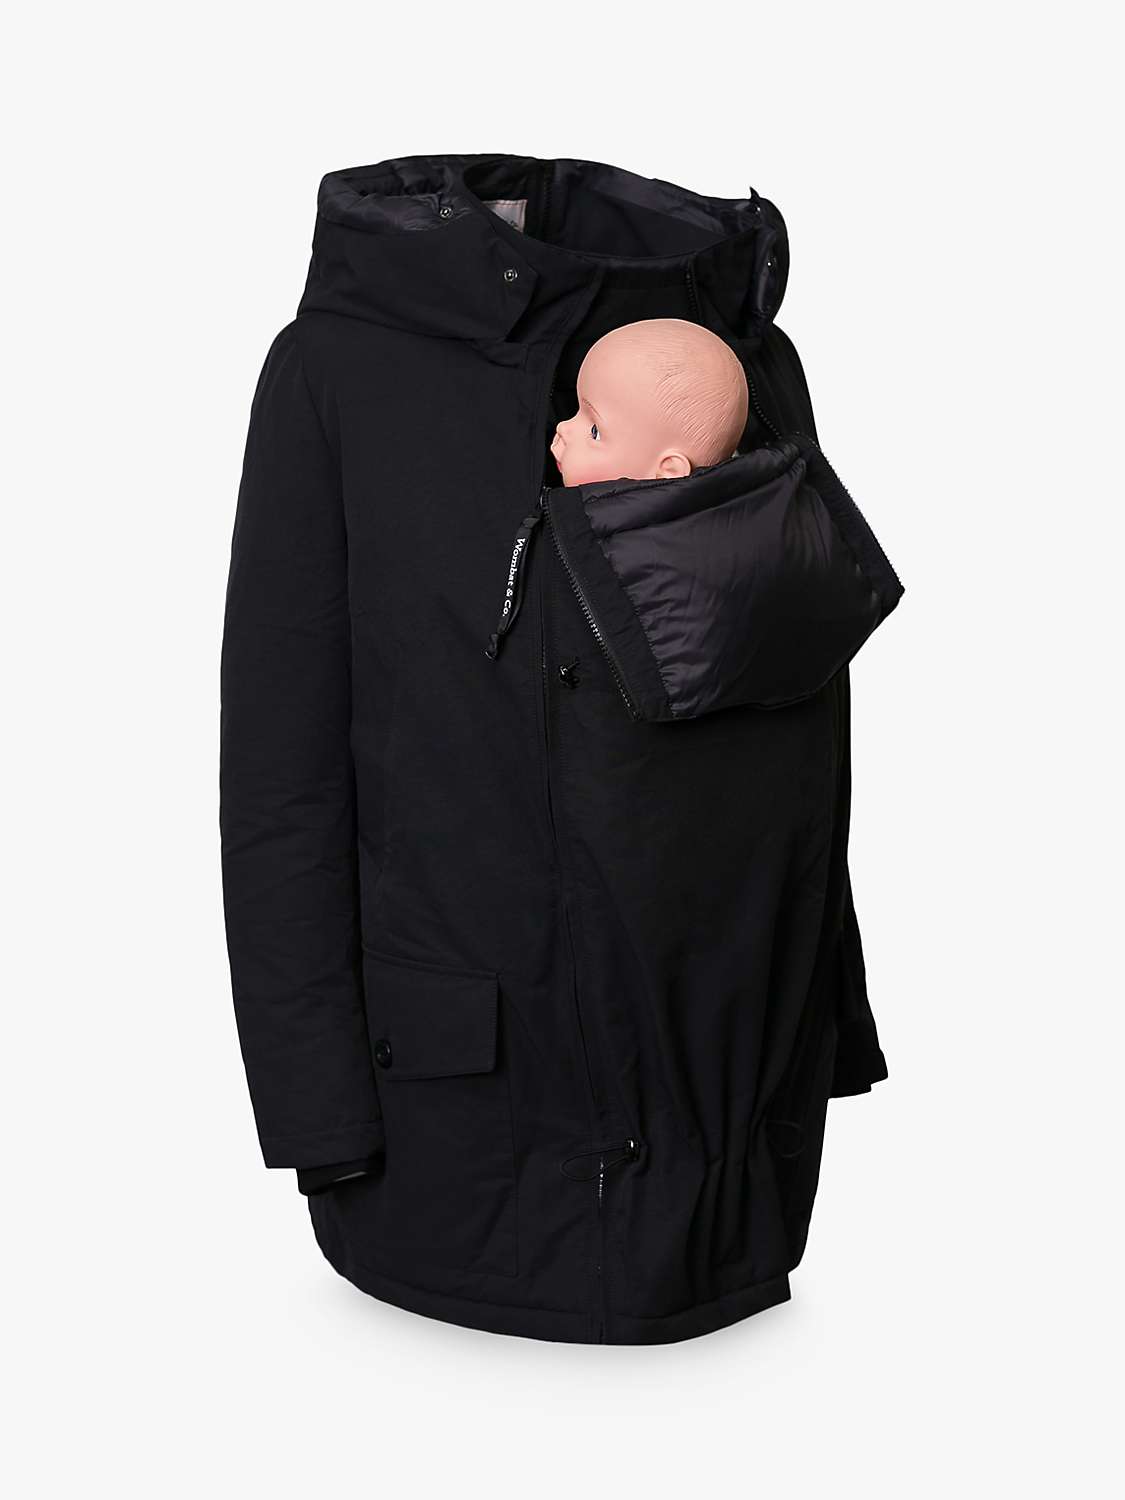 Buy Wombat & Co Koala Babywearing Maternity Parka Jacket, Black Online at johnlewis.com